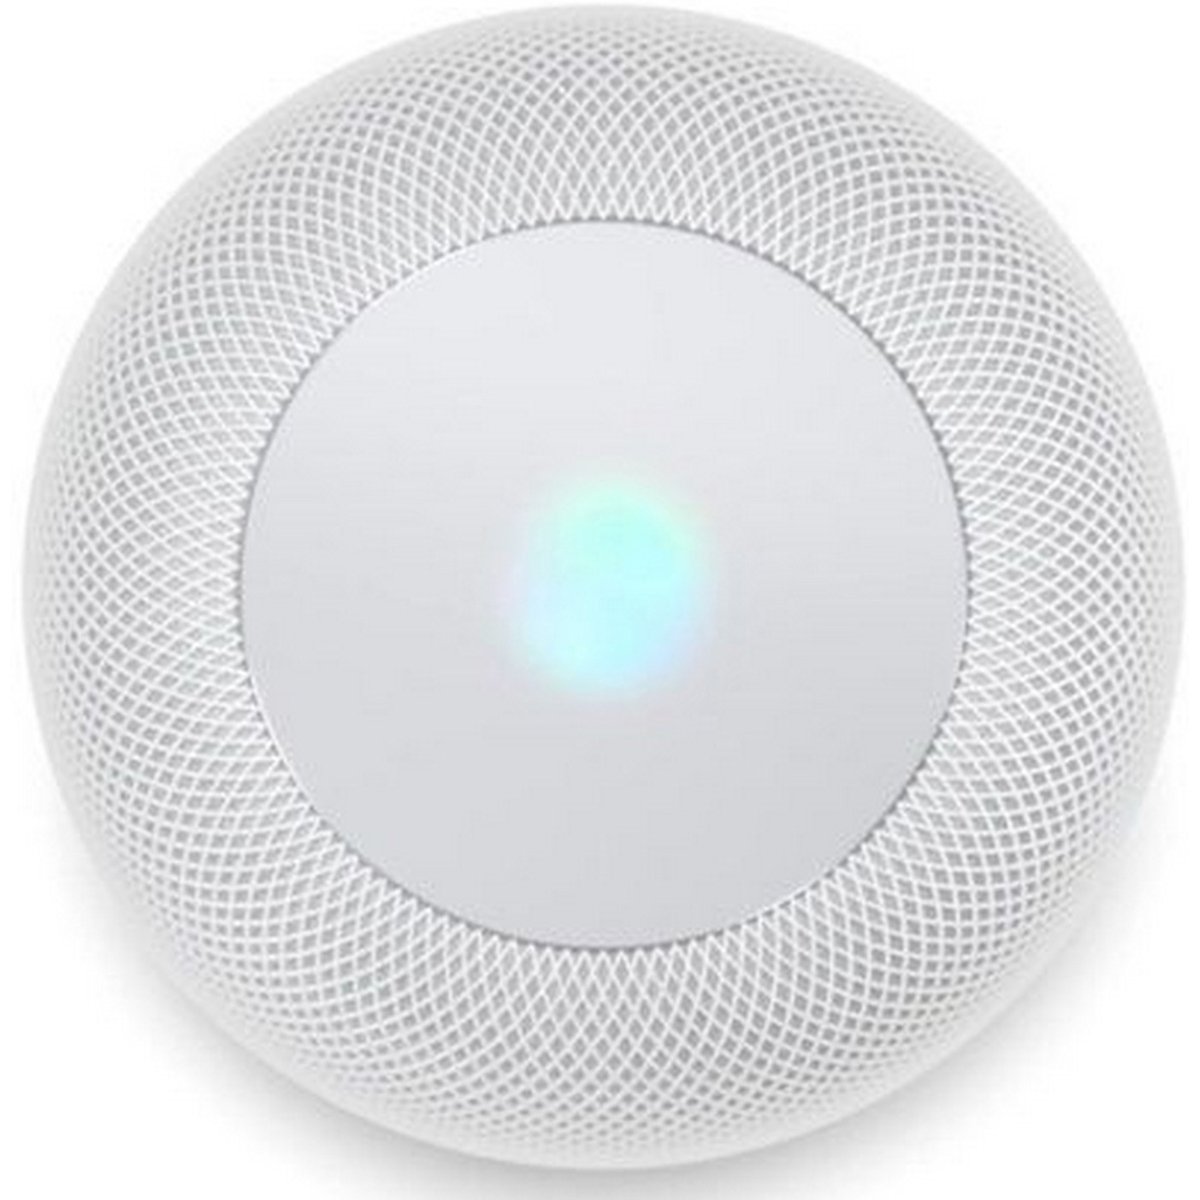 Apple Smart Speaker Home Pod White